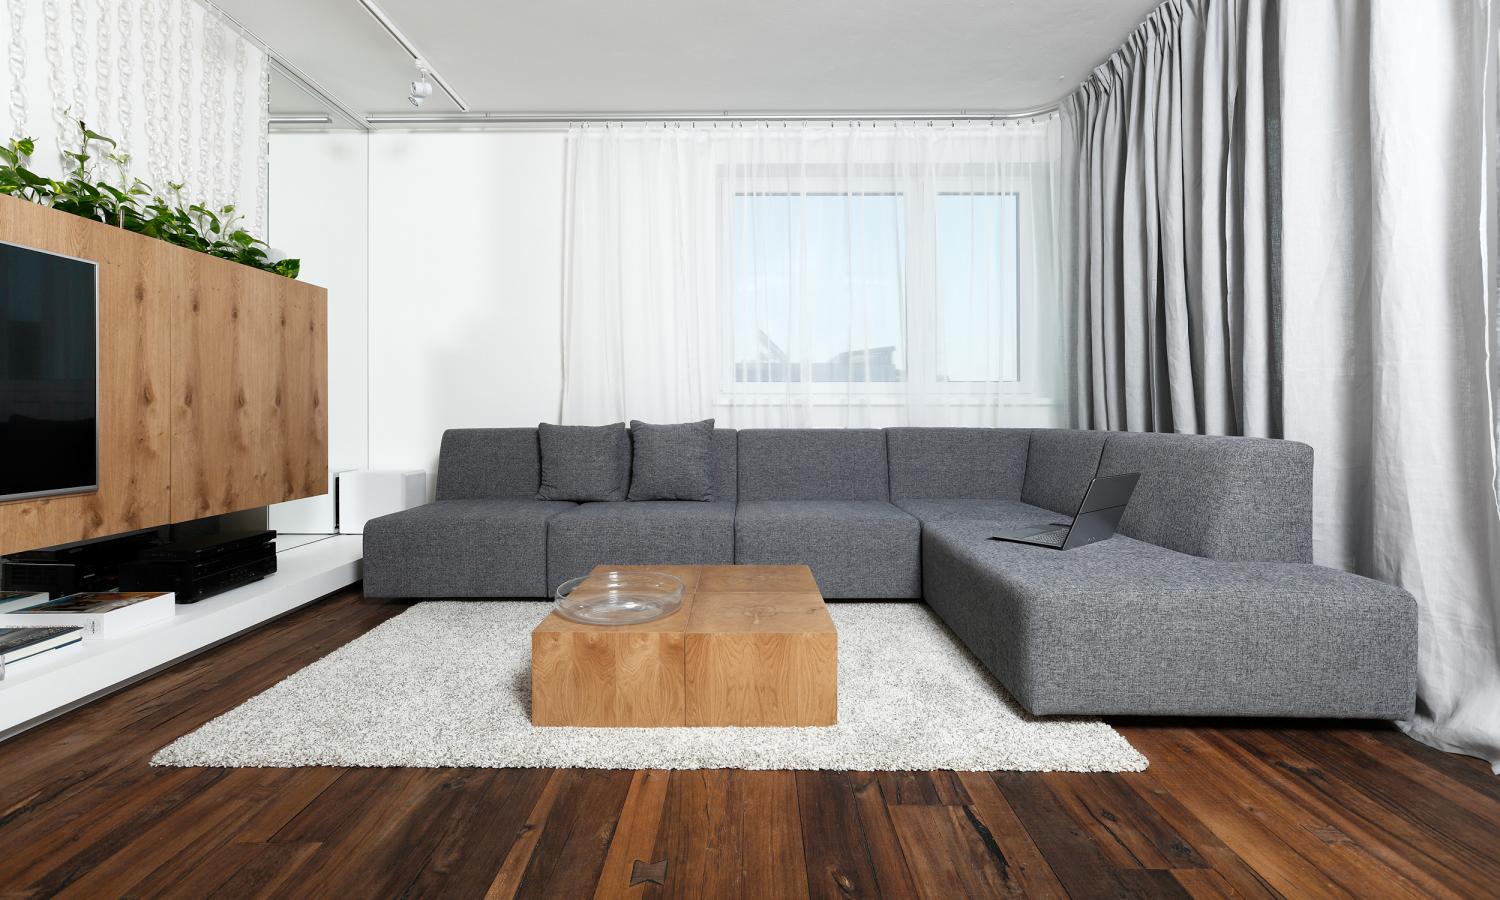 Elegant apartment interior design